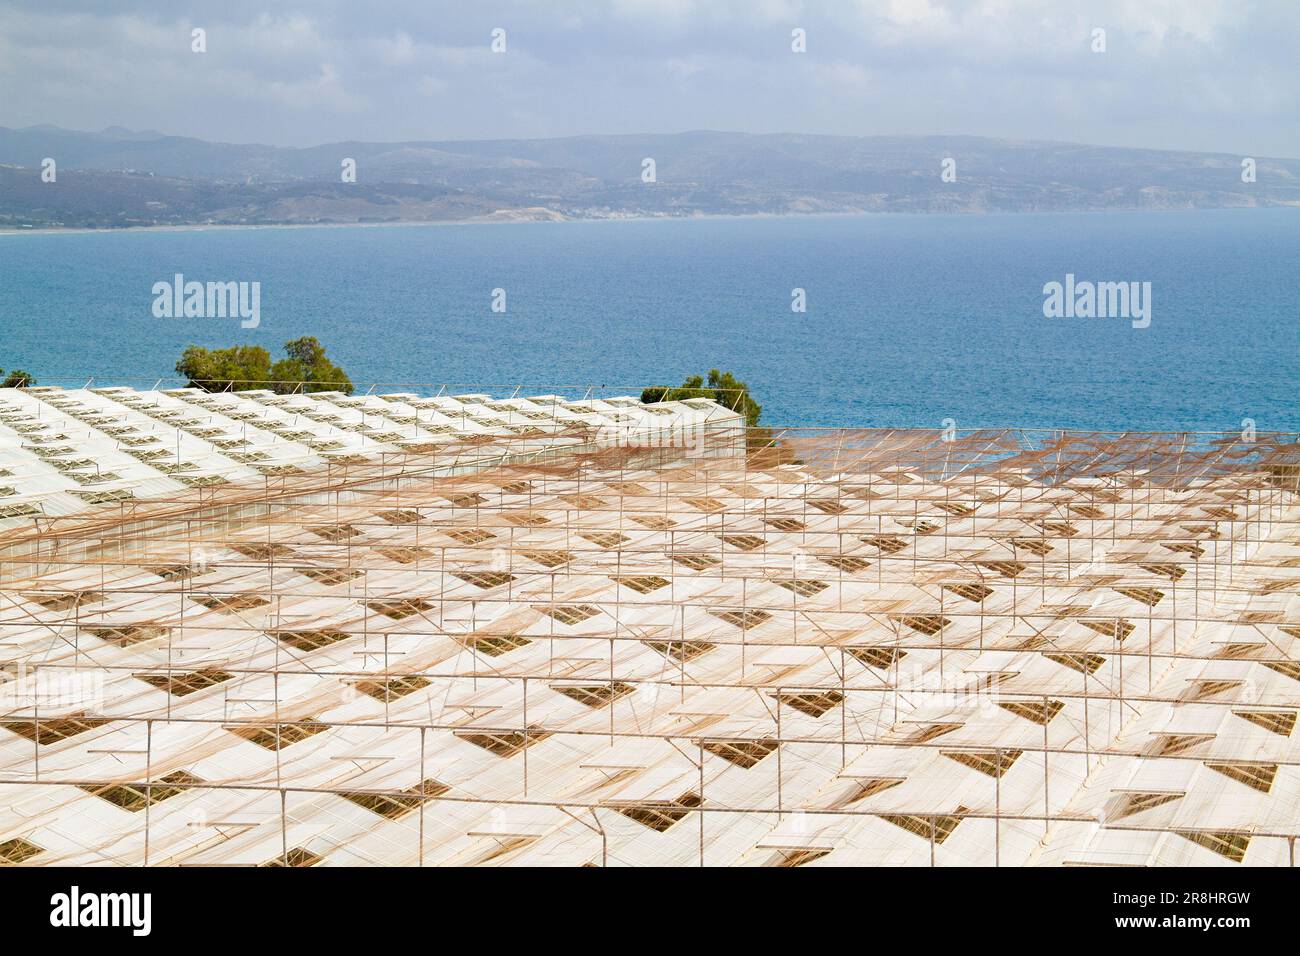 Vue de dessus des toits des serres avec fenêtres de ventilation ouvertes près de la côte de Méditerranée Banque D'Images